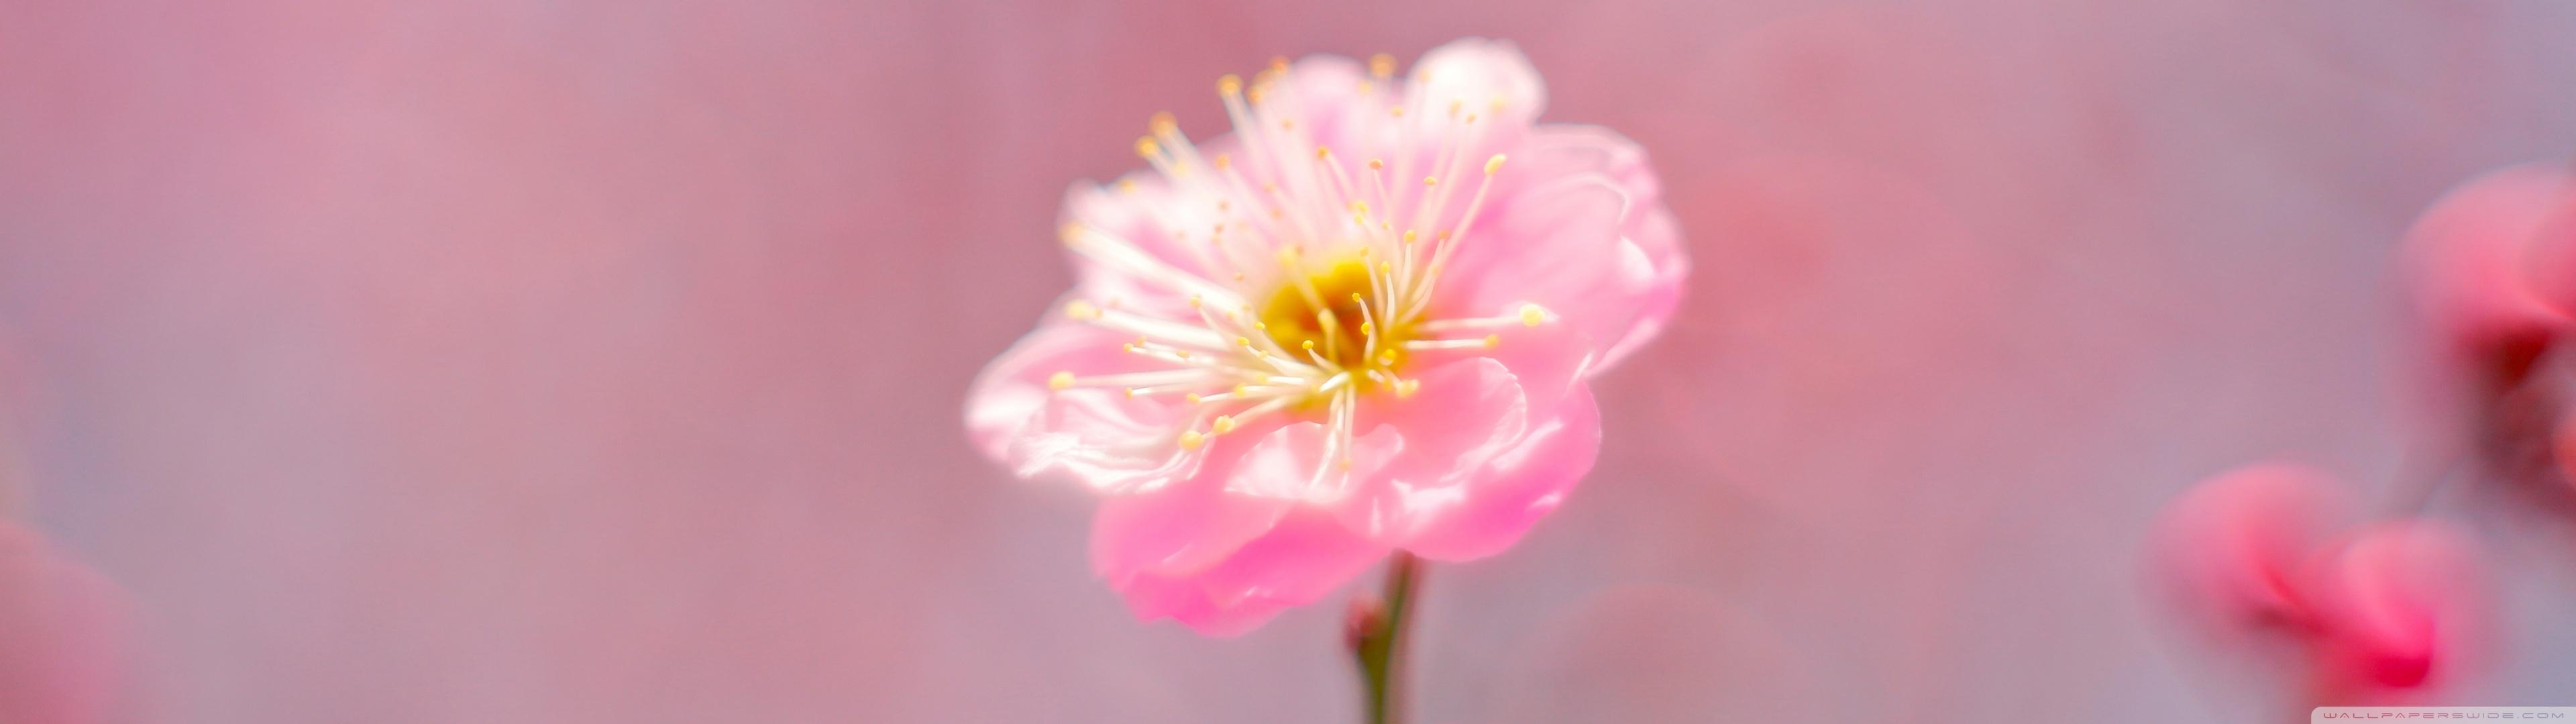 Pink Spring Flower Ultra HD Desktop Background Wallpaper For